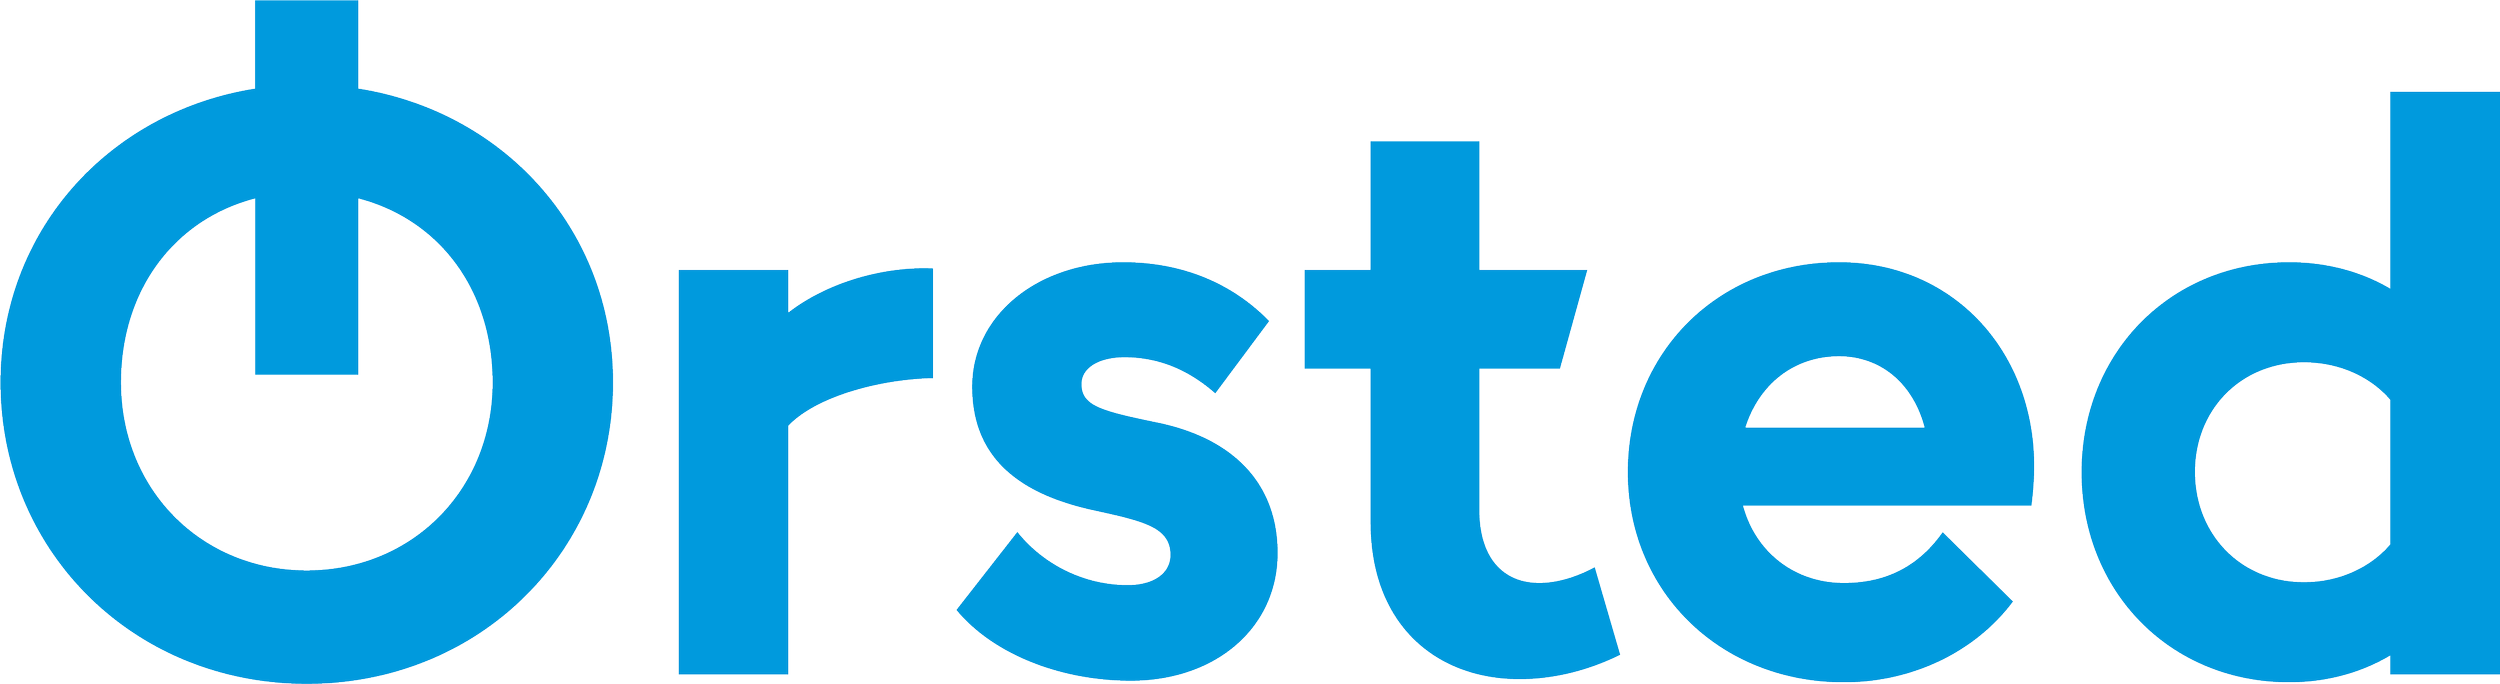 Ørsted_logo.png